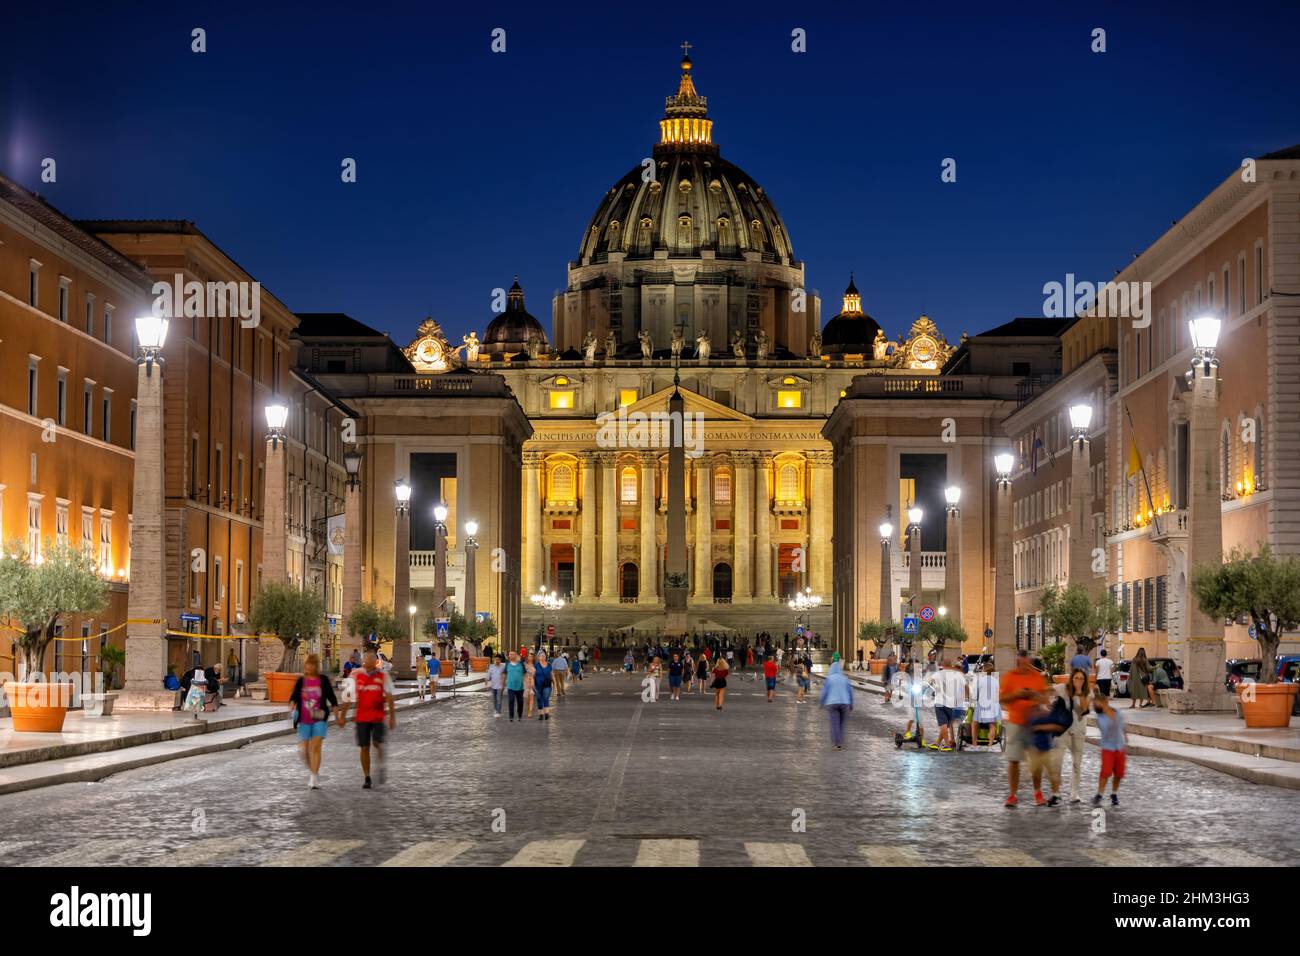 Vaticano, Roma, Italia - 5 settembre 2020: Basilica di San Pietro in Vaticano di notte, vista da via della conciliazione. Foto Stock